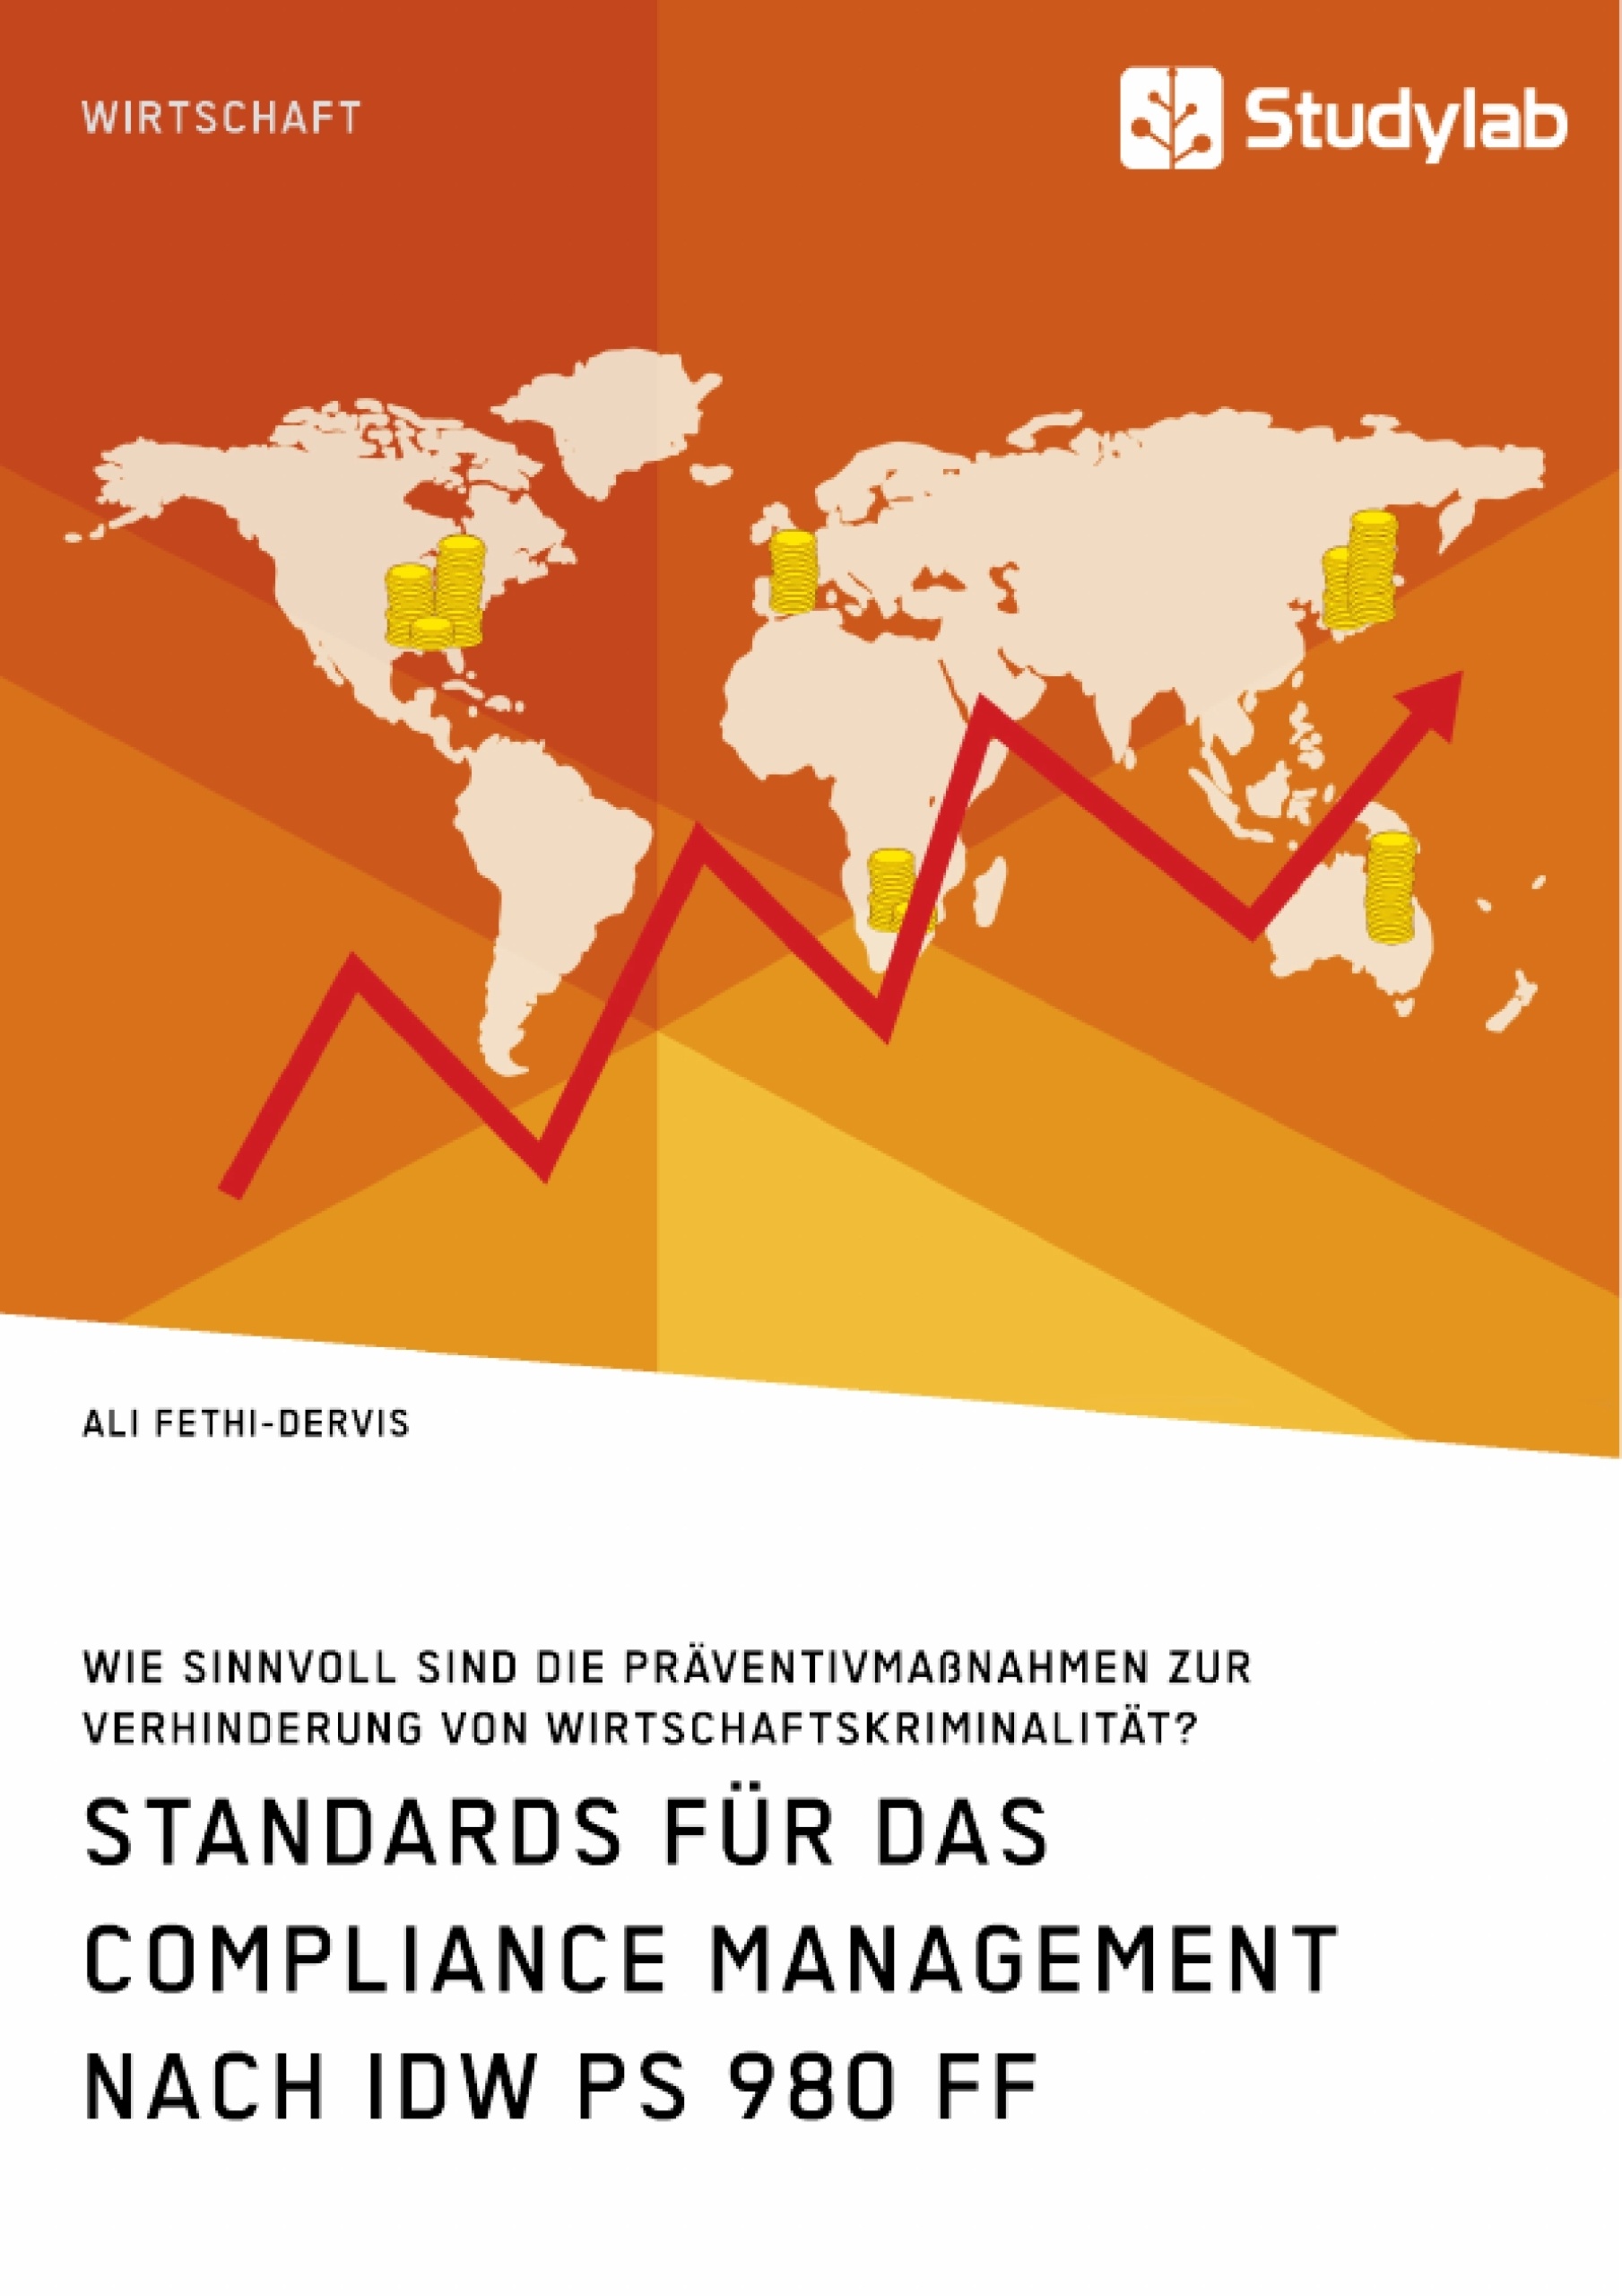 Titre: Standards für das Compliance Management nach IDW PS 980 ff. Wie sinnvoll sind die Präventivmaßnahmen zur Verhinderung von Wirtschaftskriminalität?